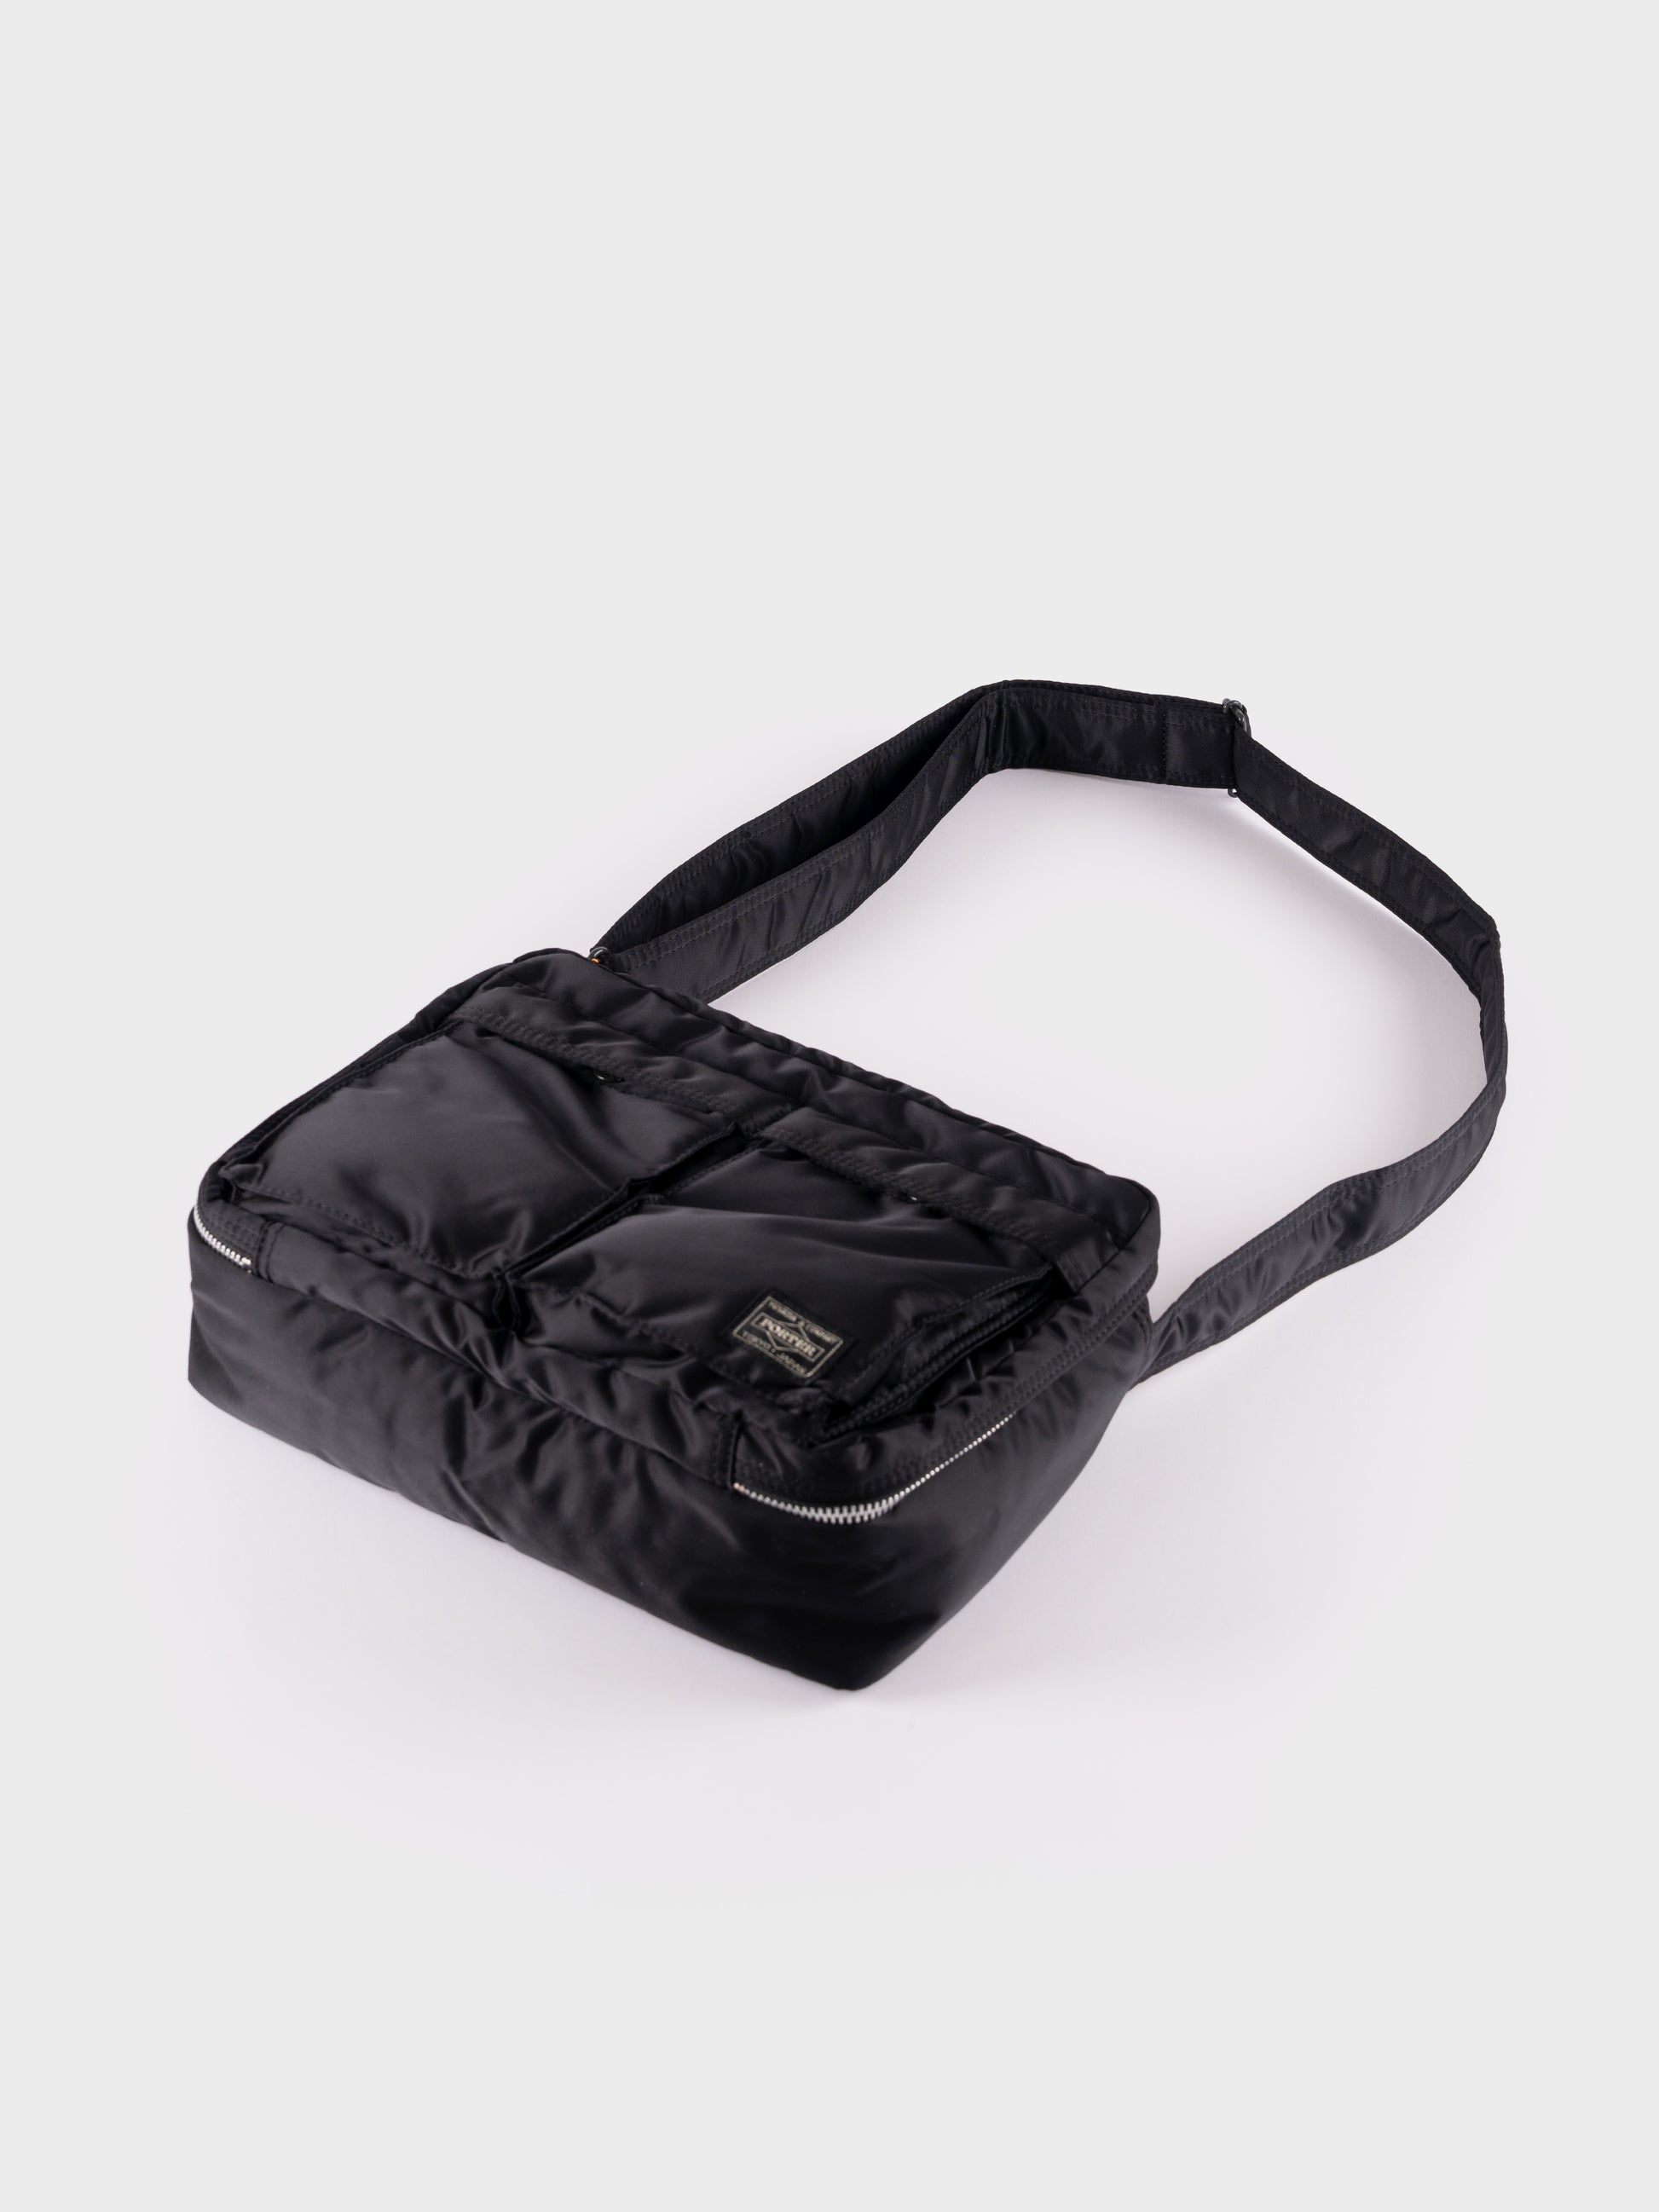 Porter-Yoshida & Co Tanker Shoulder Bag L - Black